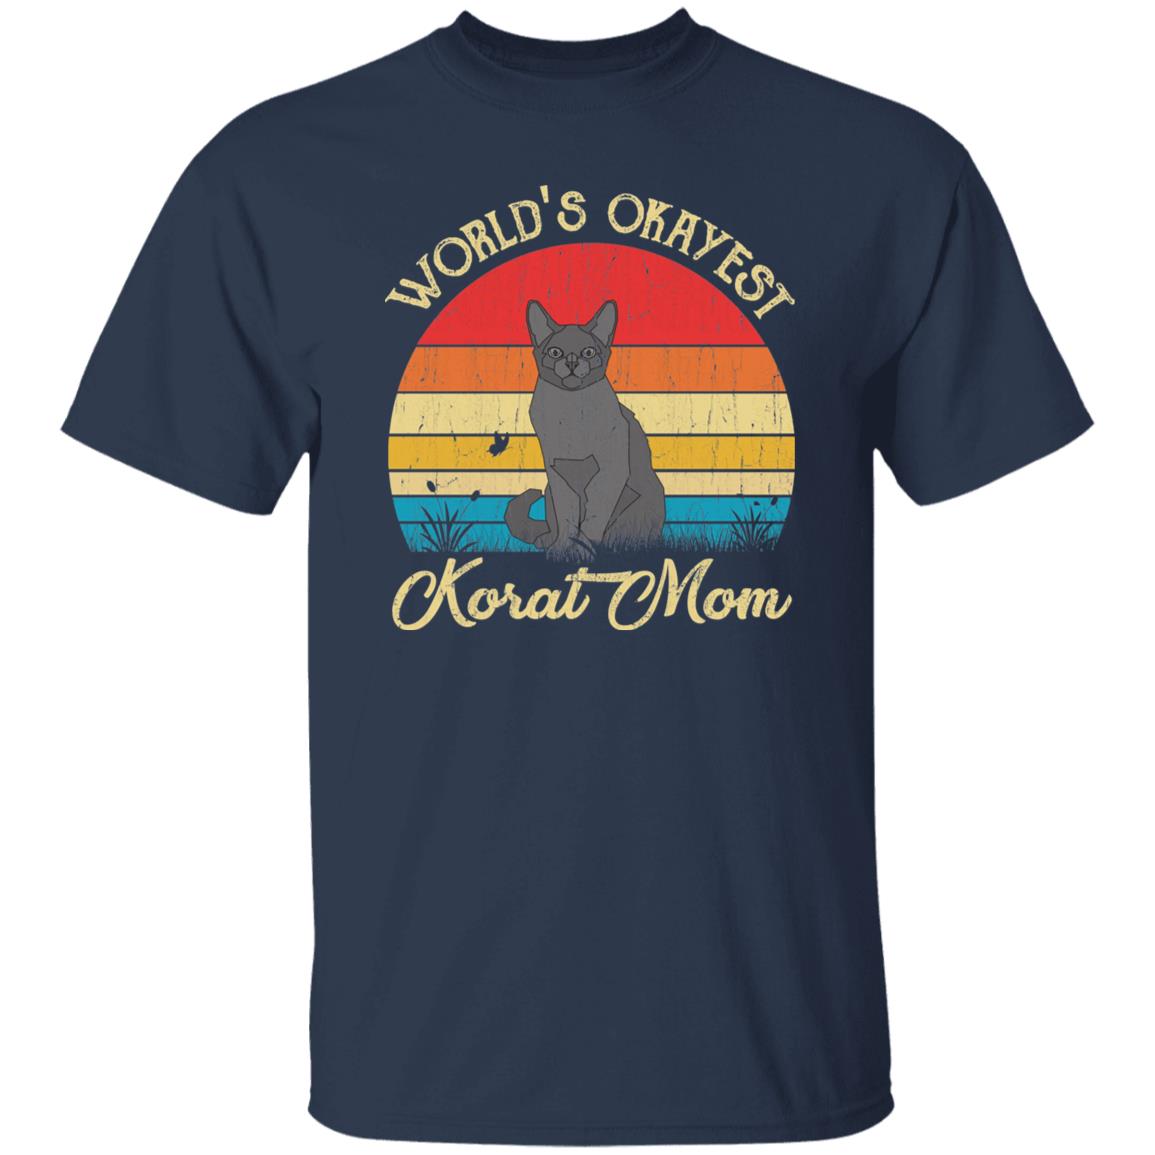 World's Okayest Korat mom Retro Style Unisex T-shirt Black Navy Dark Heather-Navy-Family-Gift-Planet